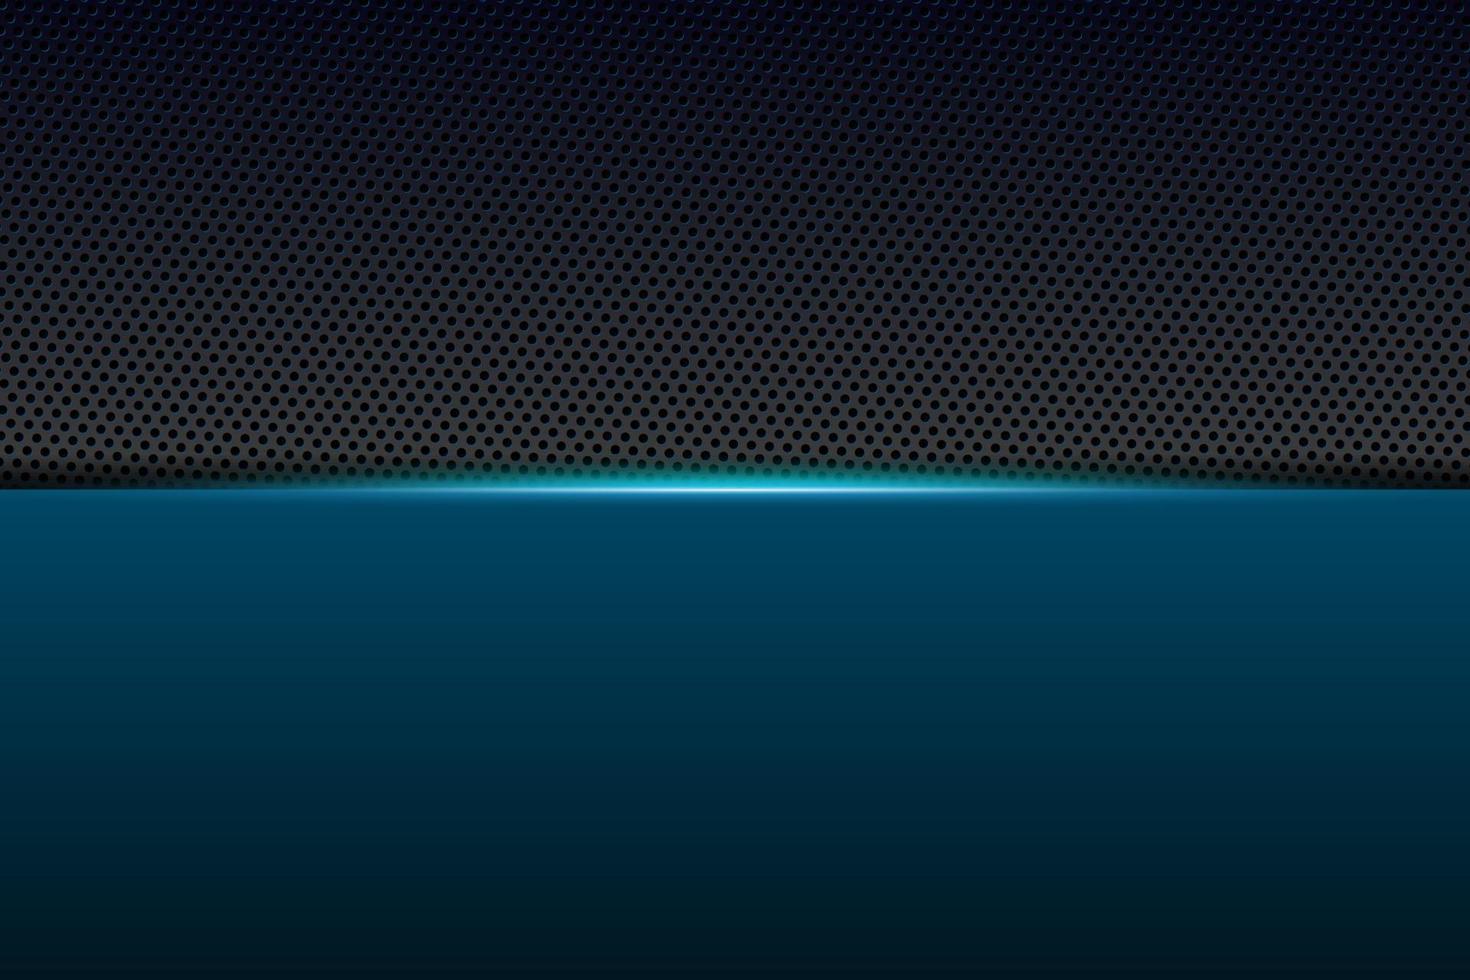 abstracte gamer achtergrond moderne tech sjabloon ontwerpconcept. metallic blauw en zwart glanzend kleurenframe op koolstofvezel materiële textuur. vector grafische spel presentatie lay-out eps illustratie